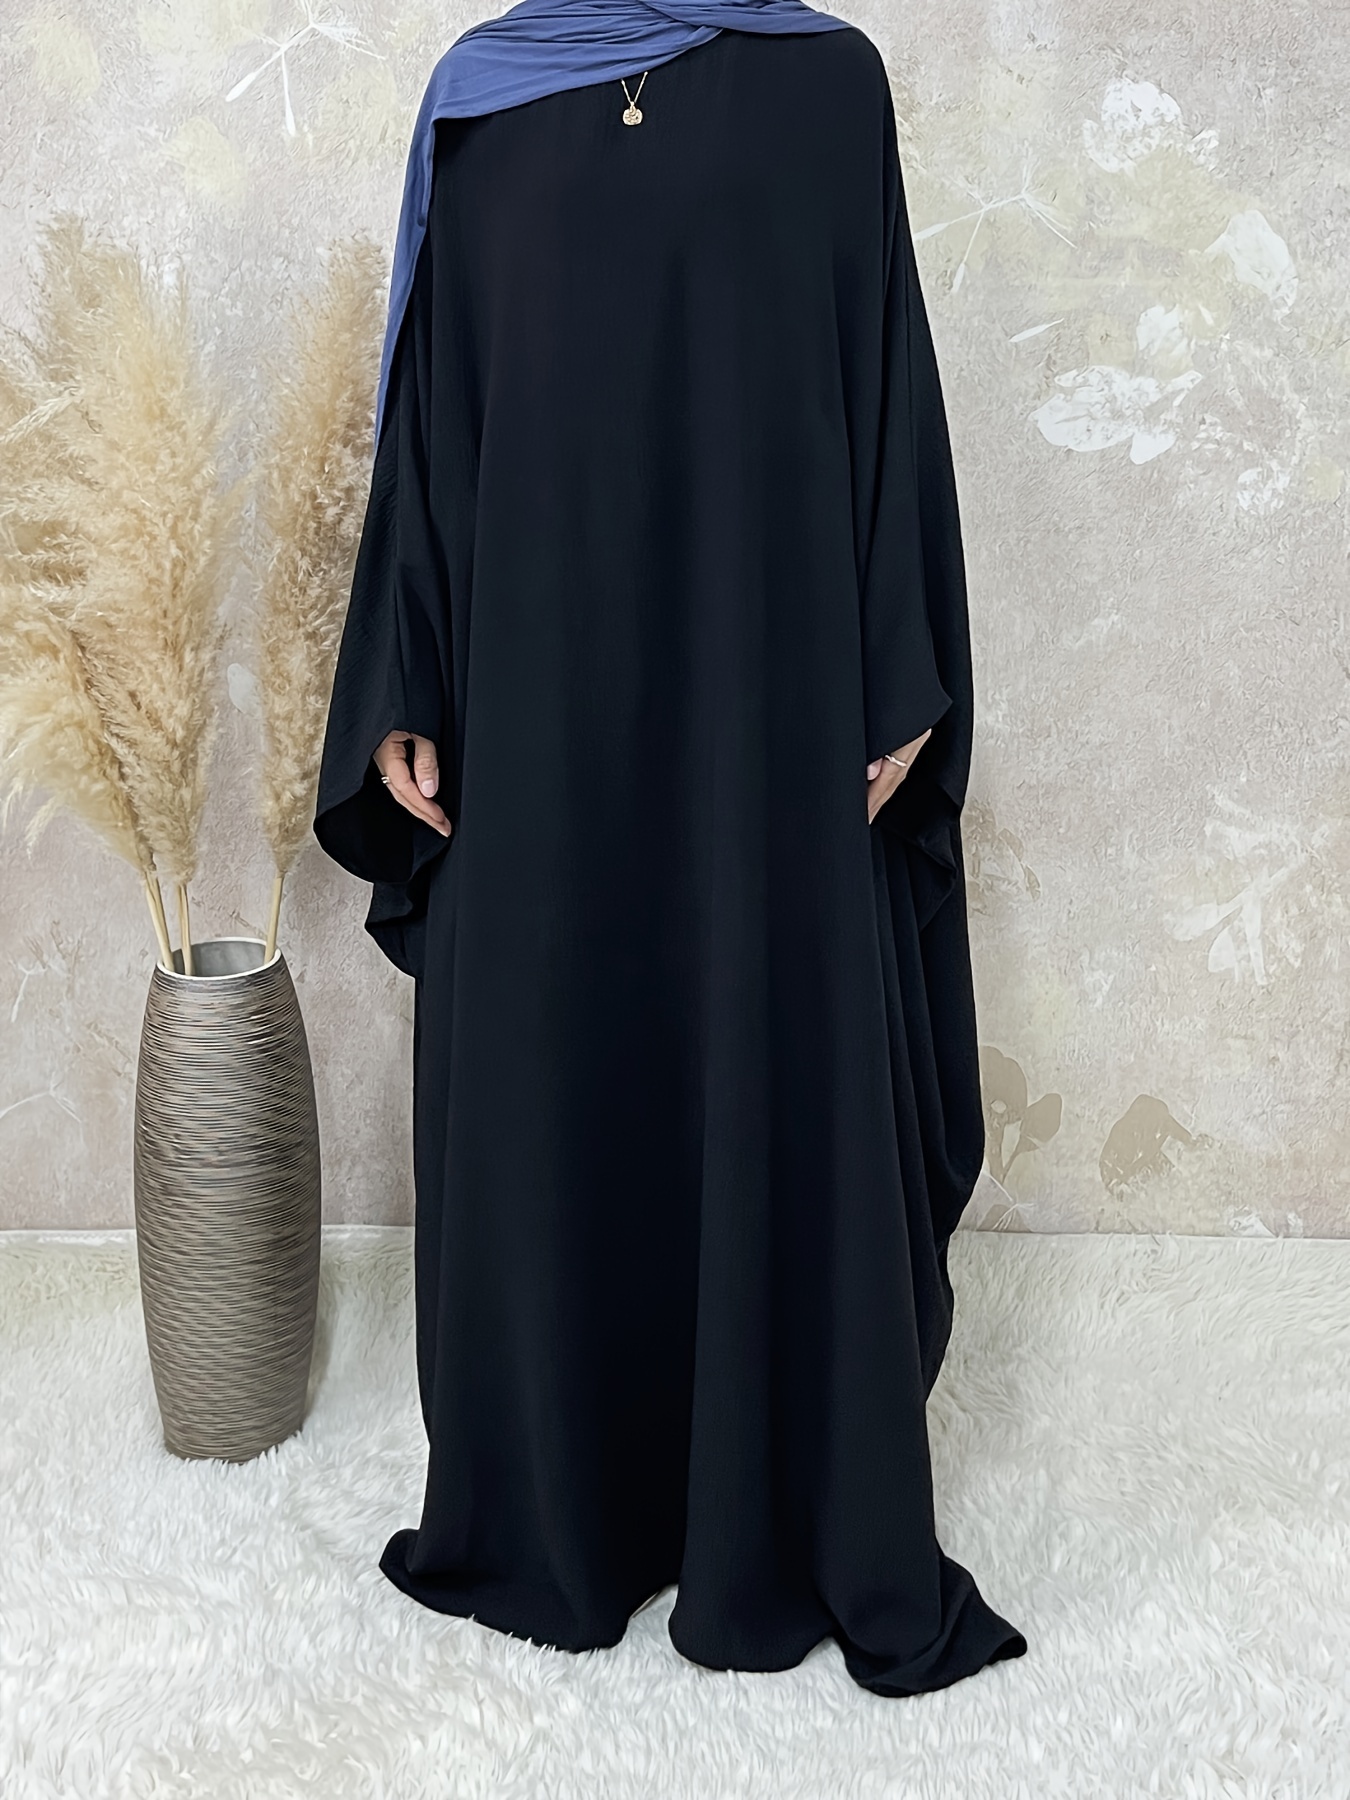 LBECLEY Teen Summer Dresses Dress Long Solid Dress Sleeve Womens Abaya Under  Dress Casual Women's Casual Dress Short Sweater Dresses for Women Black Xxl  